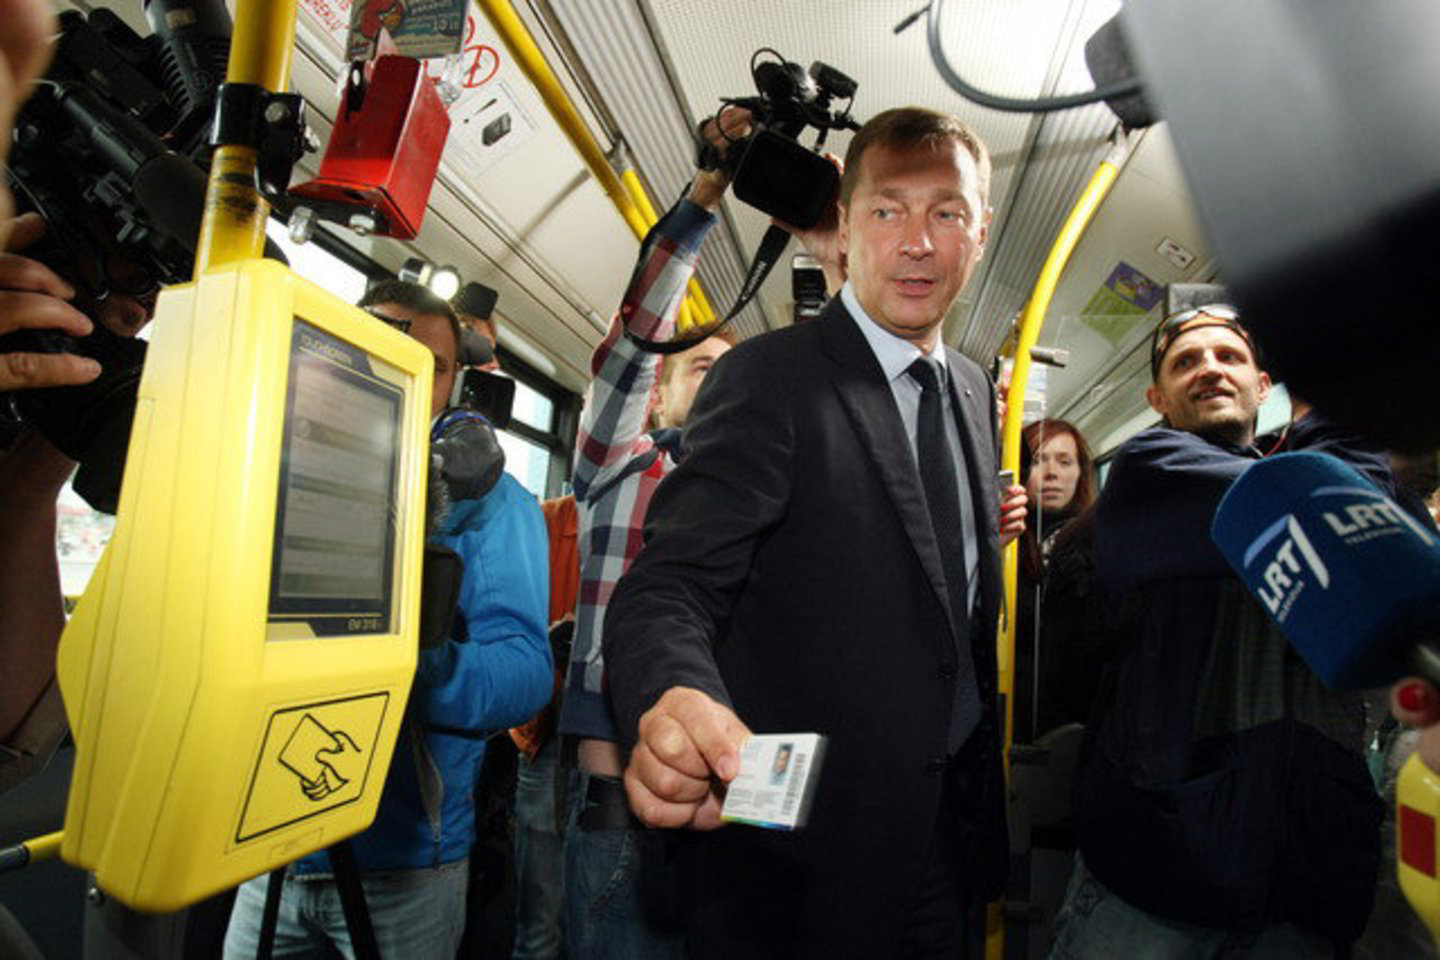 Vilniaus meras A. Zuokas troleibuse bando naują bilietų sistemą, kurią griežčiau tikrins kontrolieriai.<br>R. Danisevičius